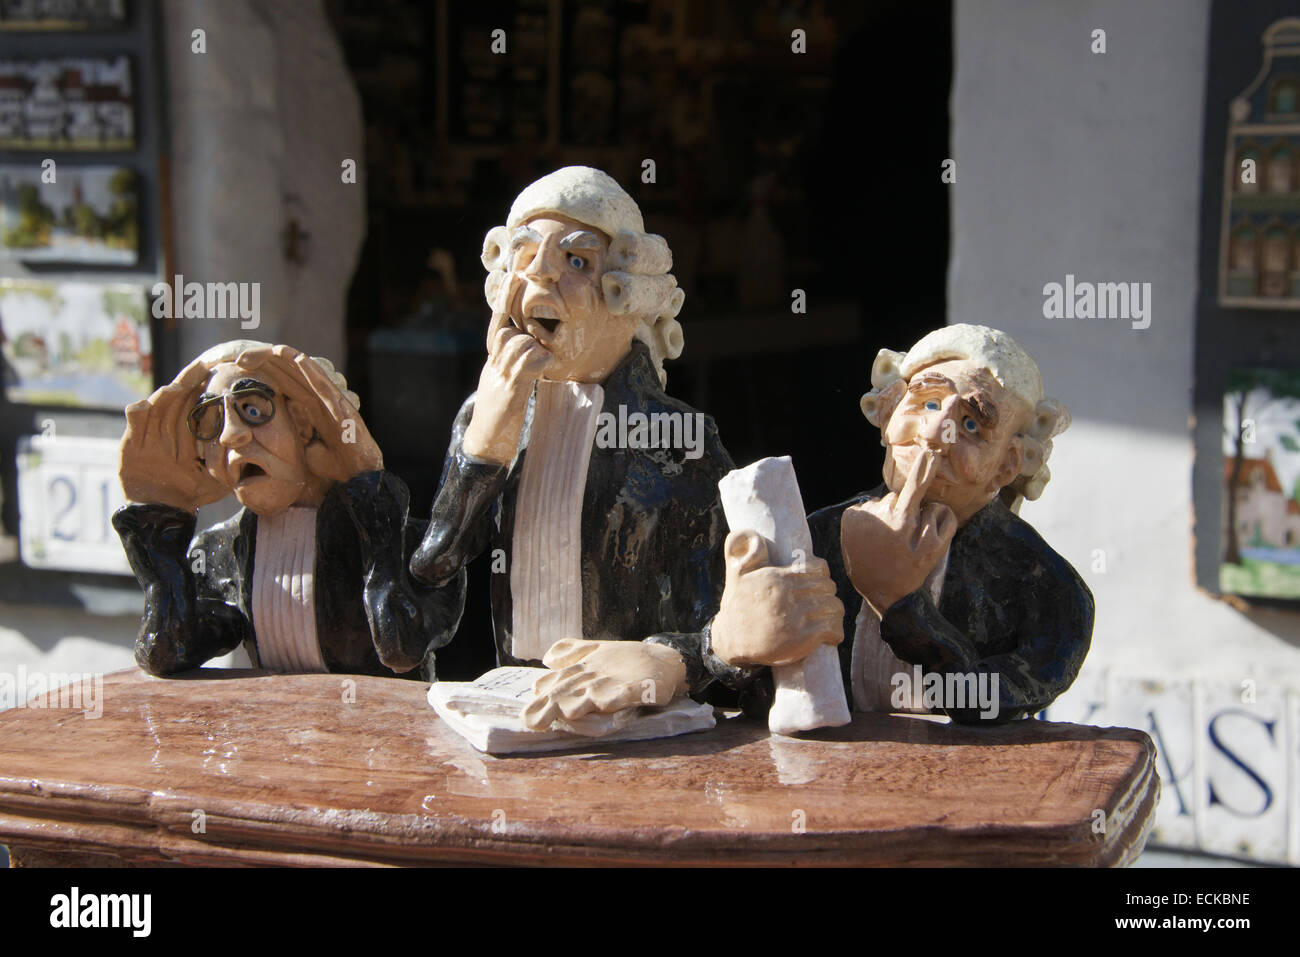 Modèle humoristique variation avec trois juges sage voir aucun mal ne disent pas le mal de candide Bruges Belgique Banque D'Images